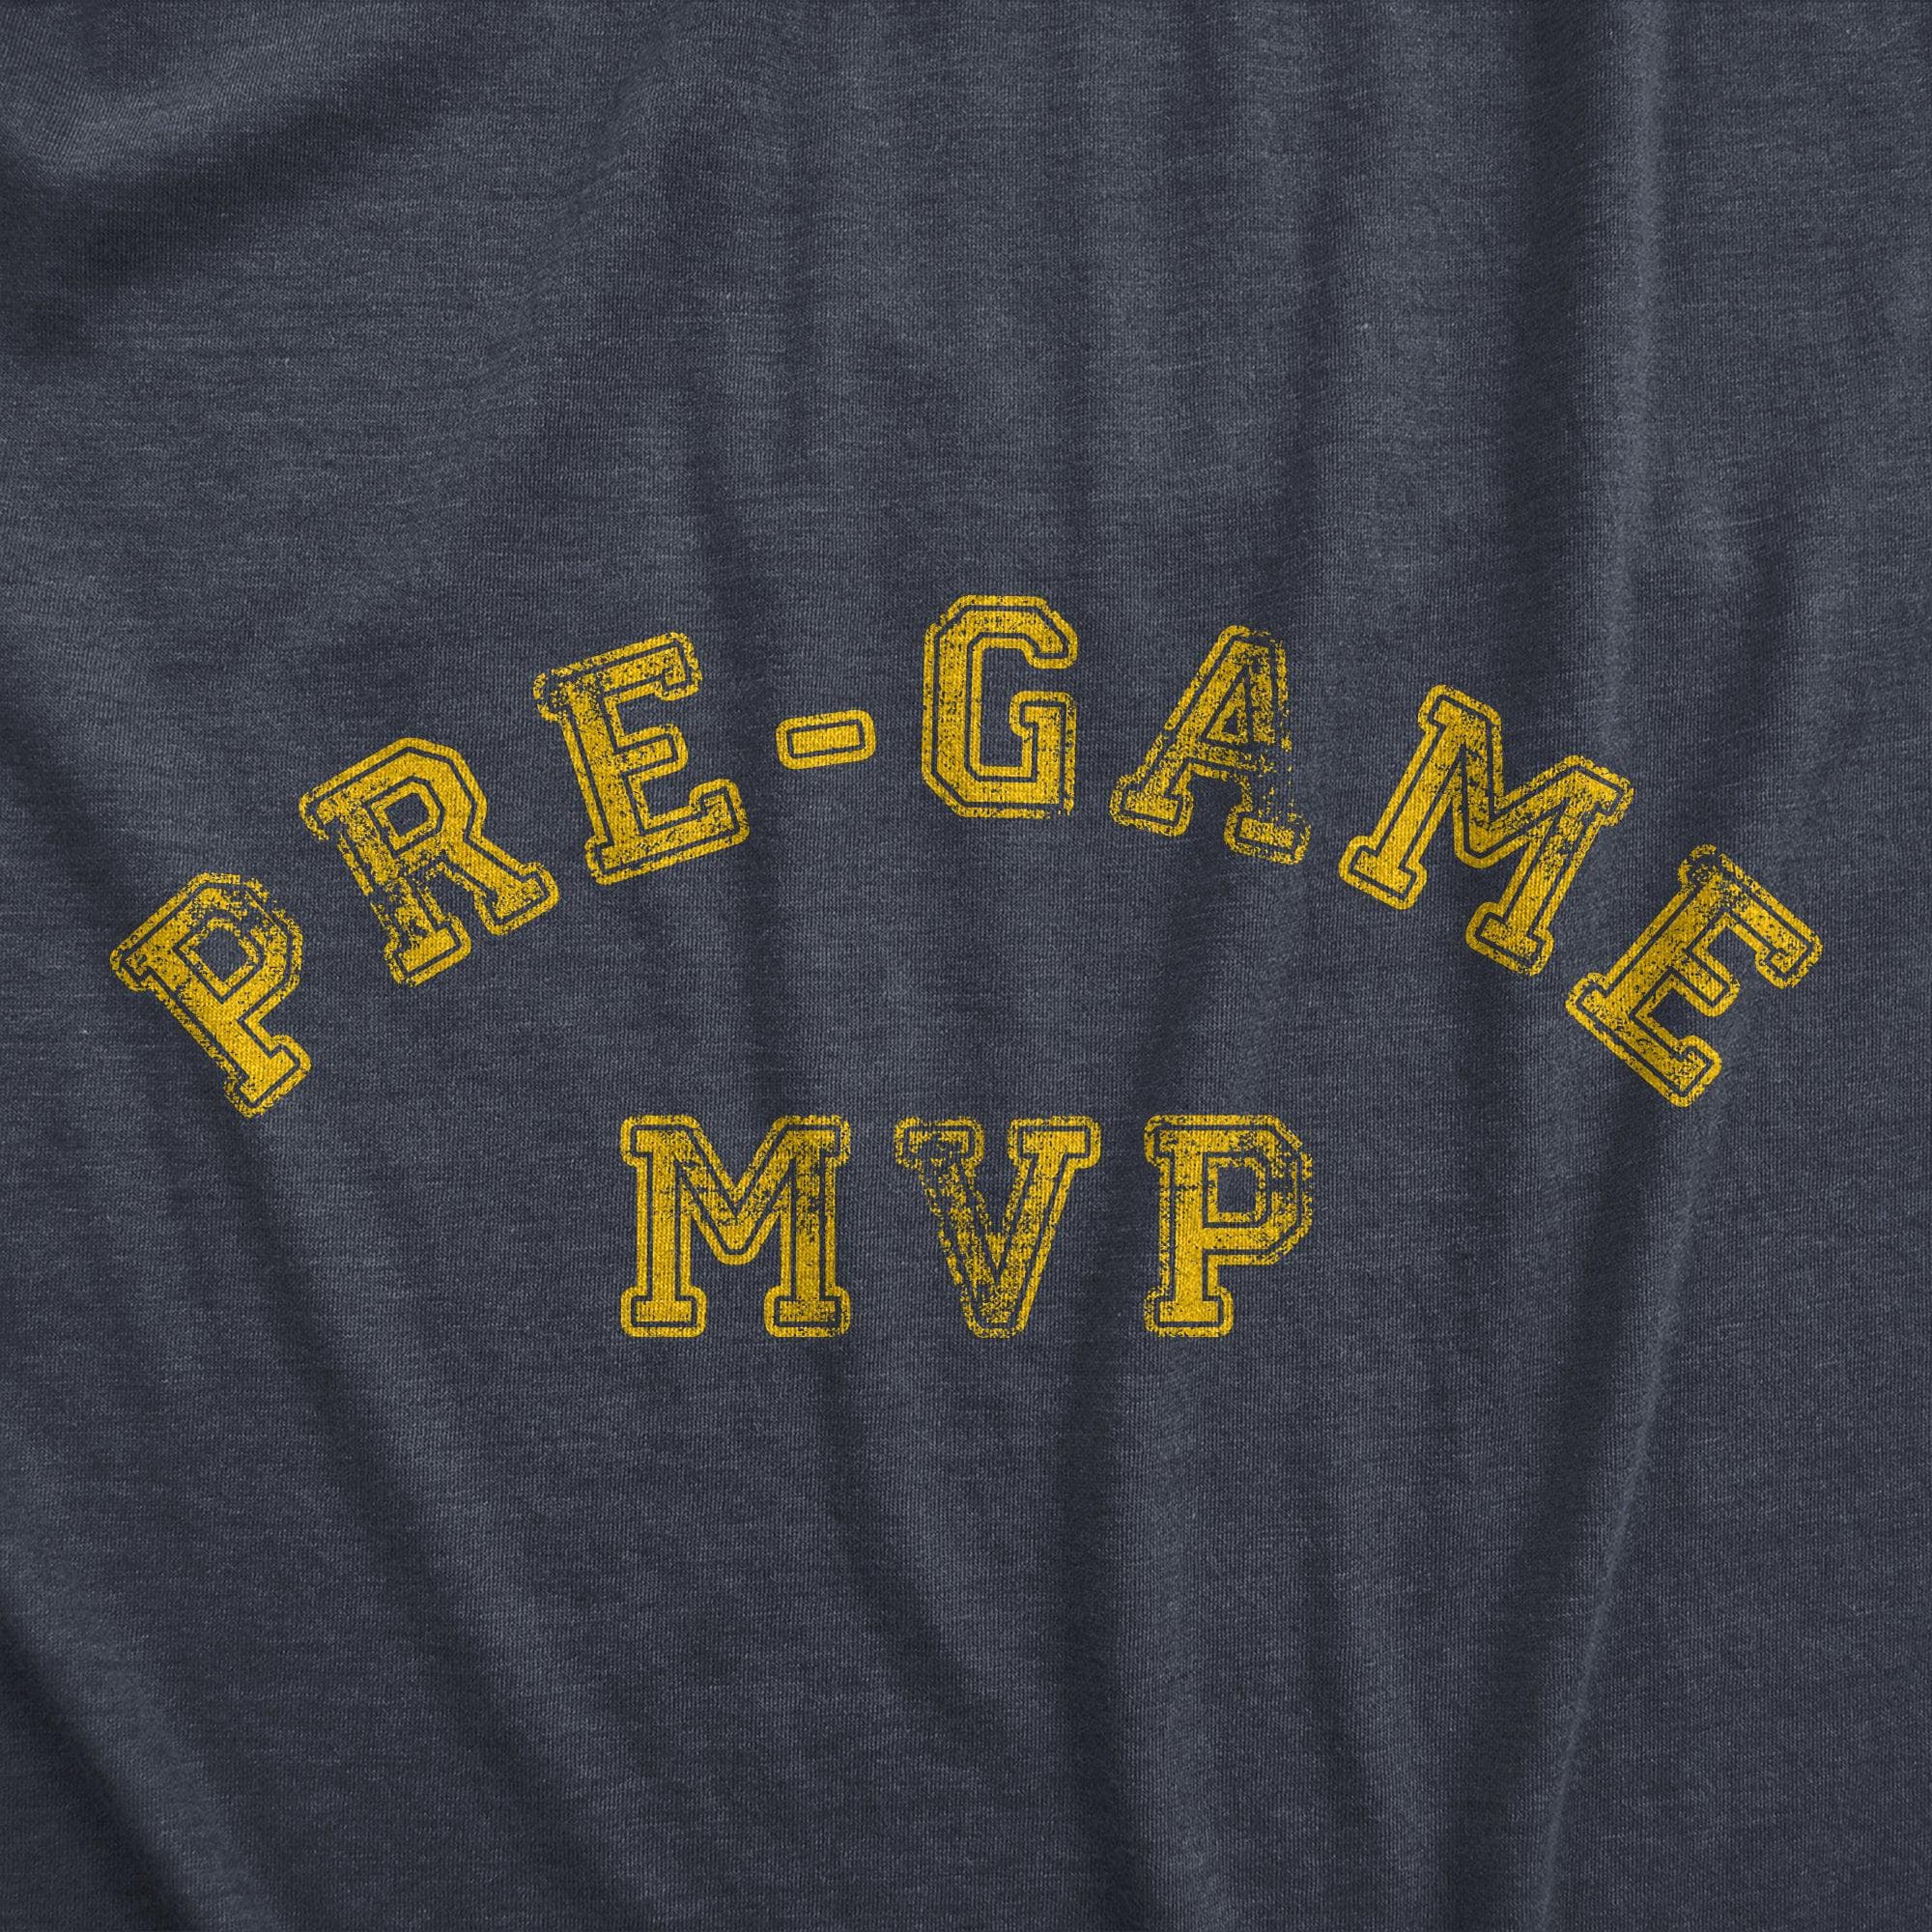 Pre Game MVP Men's Tshirt  -  Crazy Dog T-Shirts